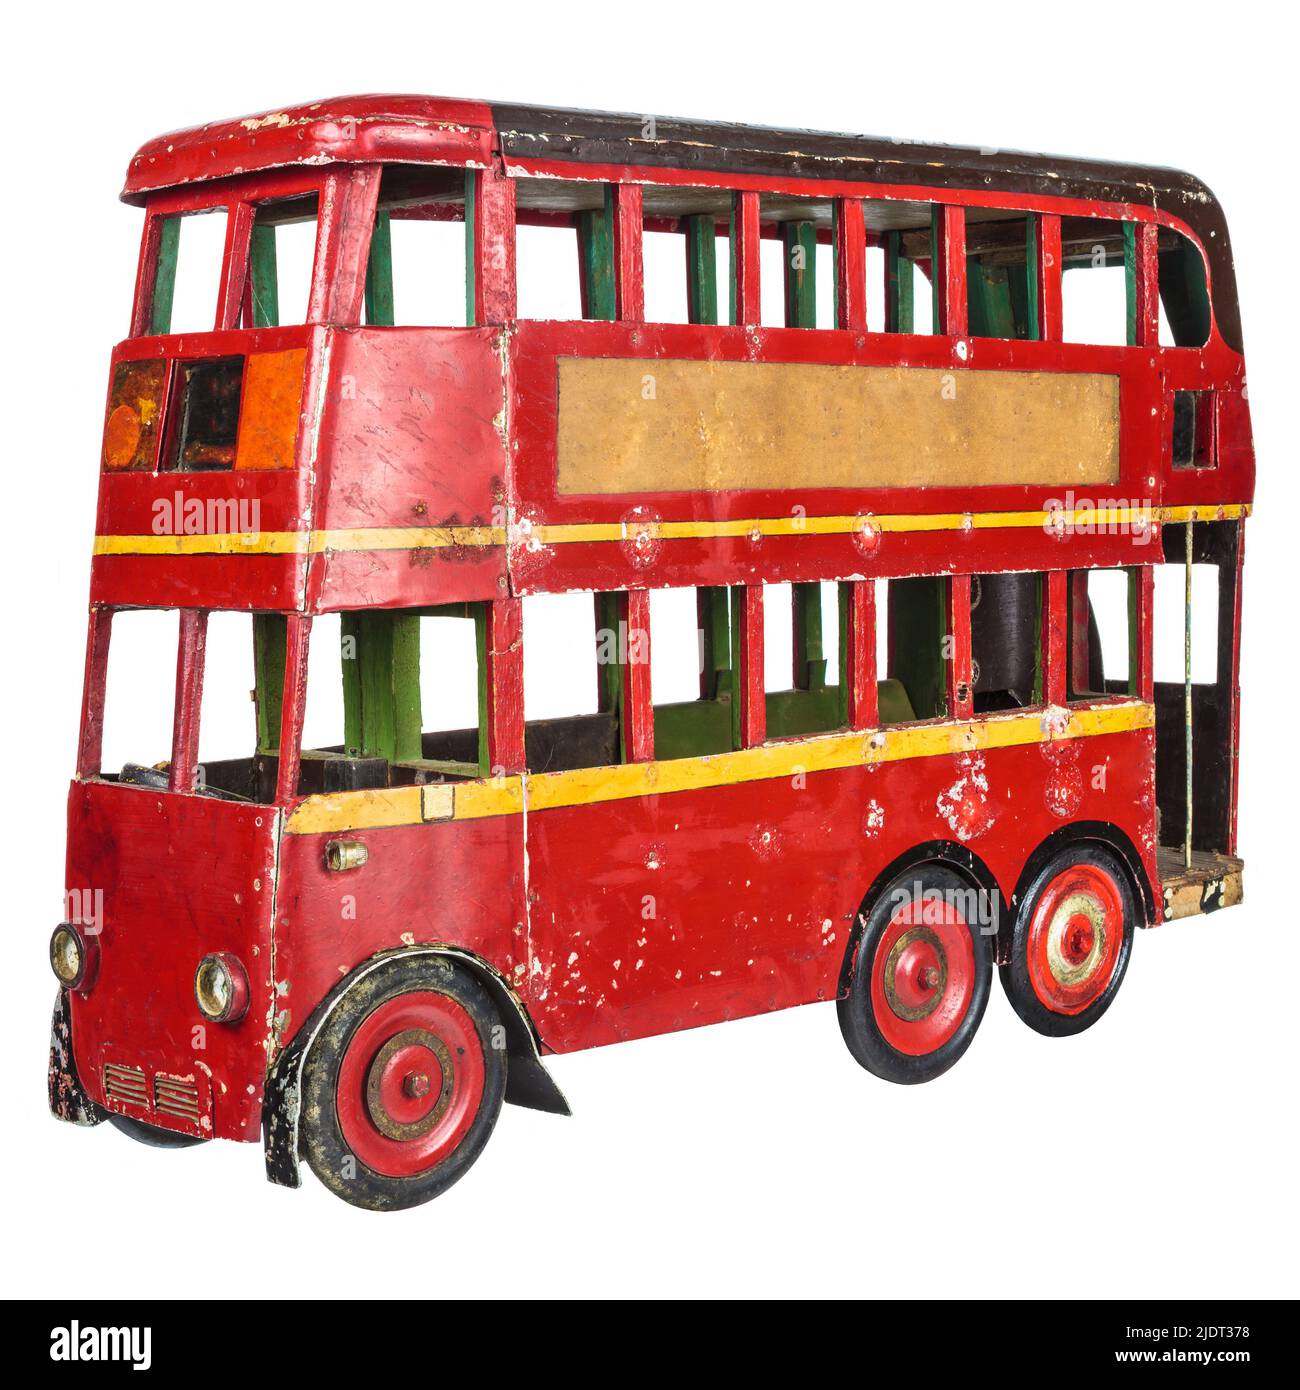 Vintage rouge anglais London bus jouet isolé sur un fond blanc Banque D'Images